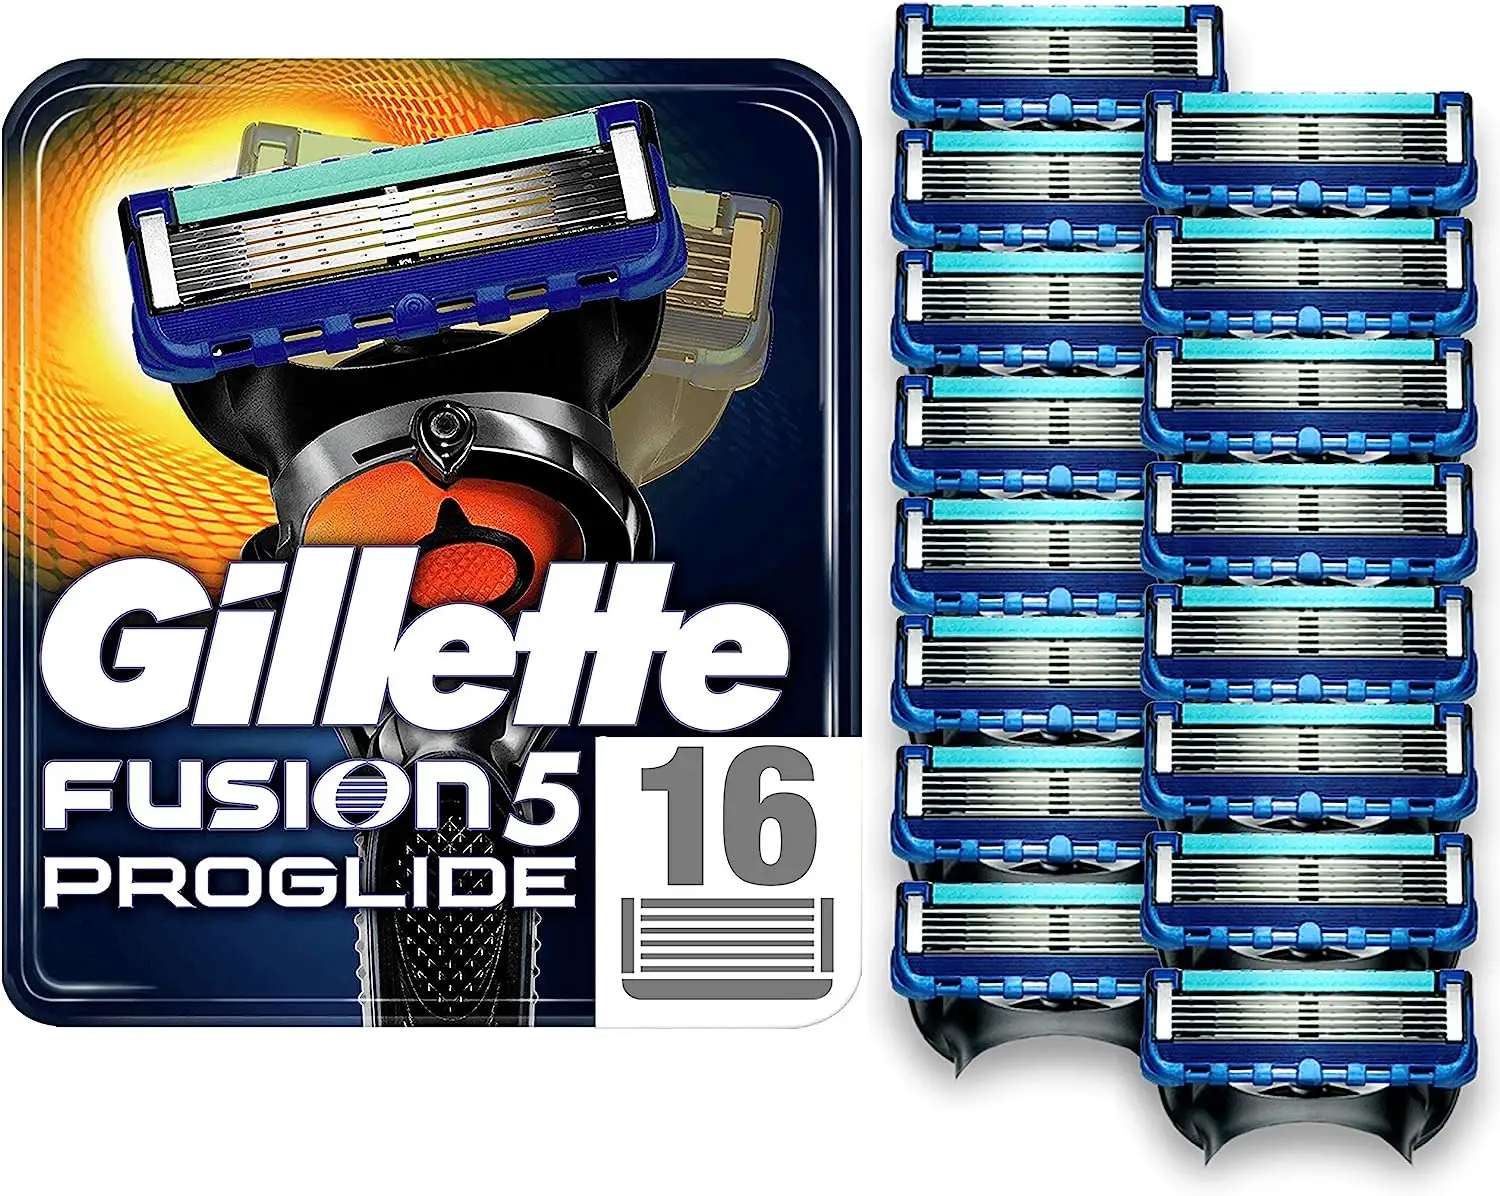 Gillette Disposable Razors for Men / Gillette Fusion Blades, Mach 3 & Proglide Razors / Gillette Disposable Razors